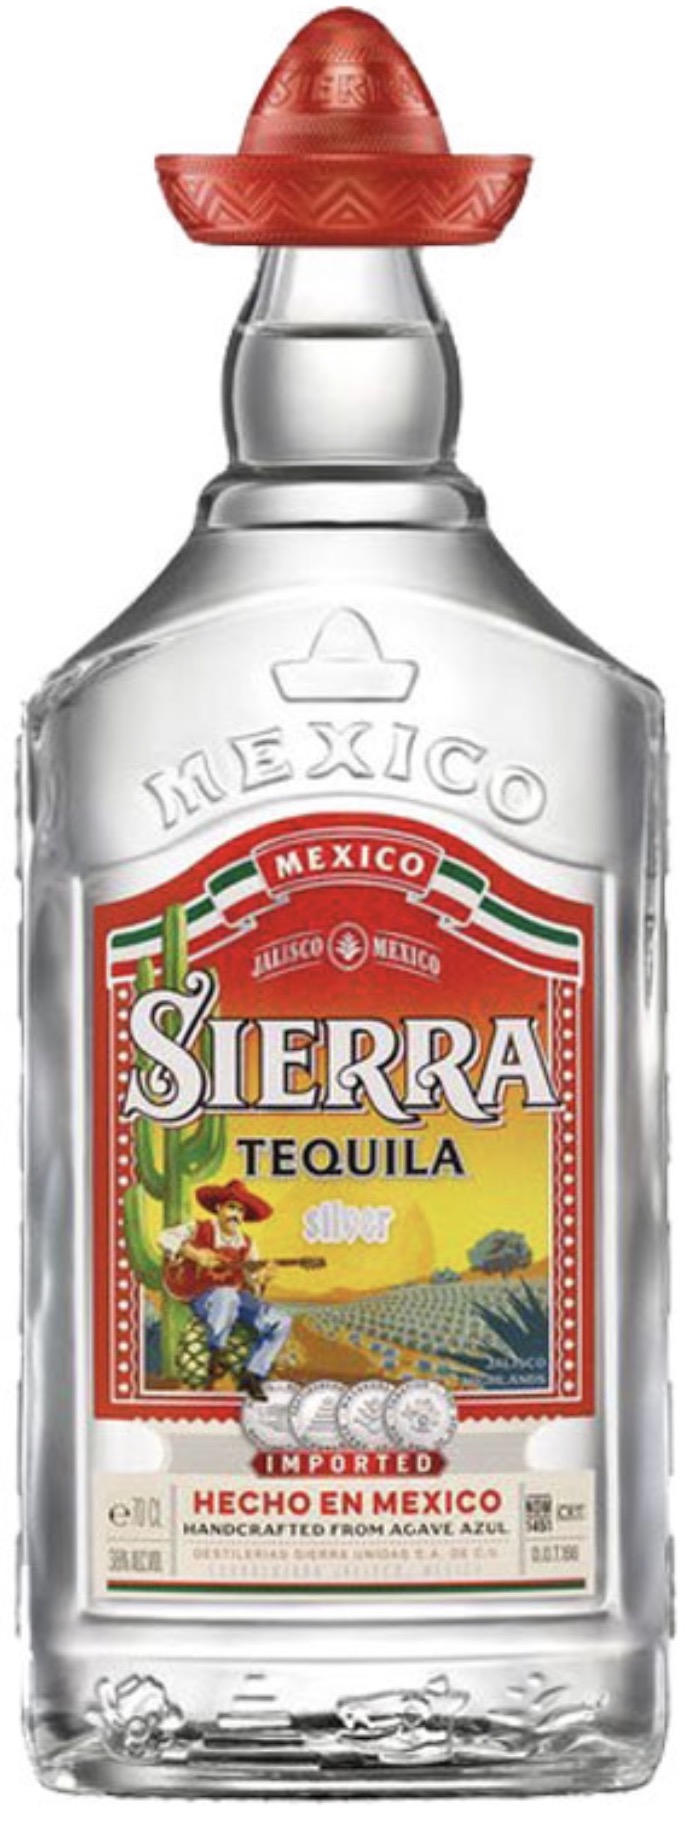 Sierra Tequila Bianco 38% vol. 0,7L